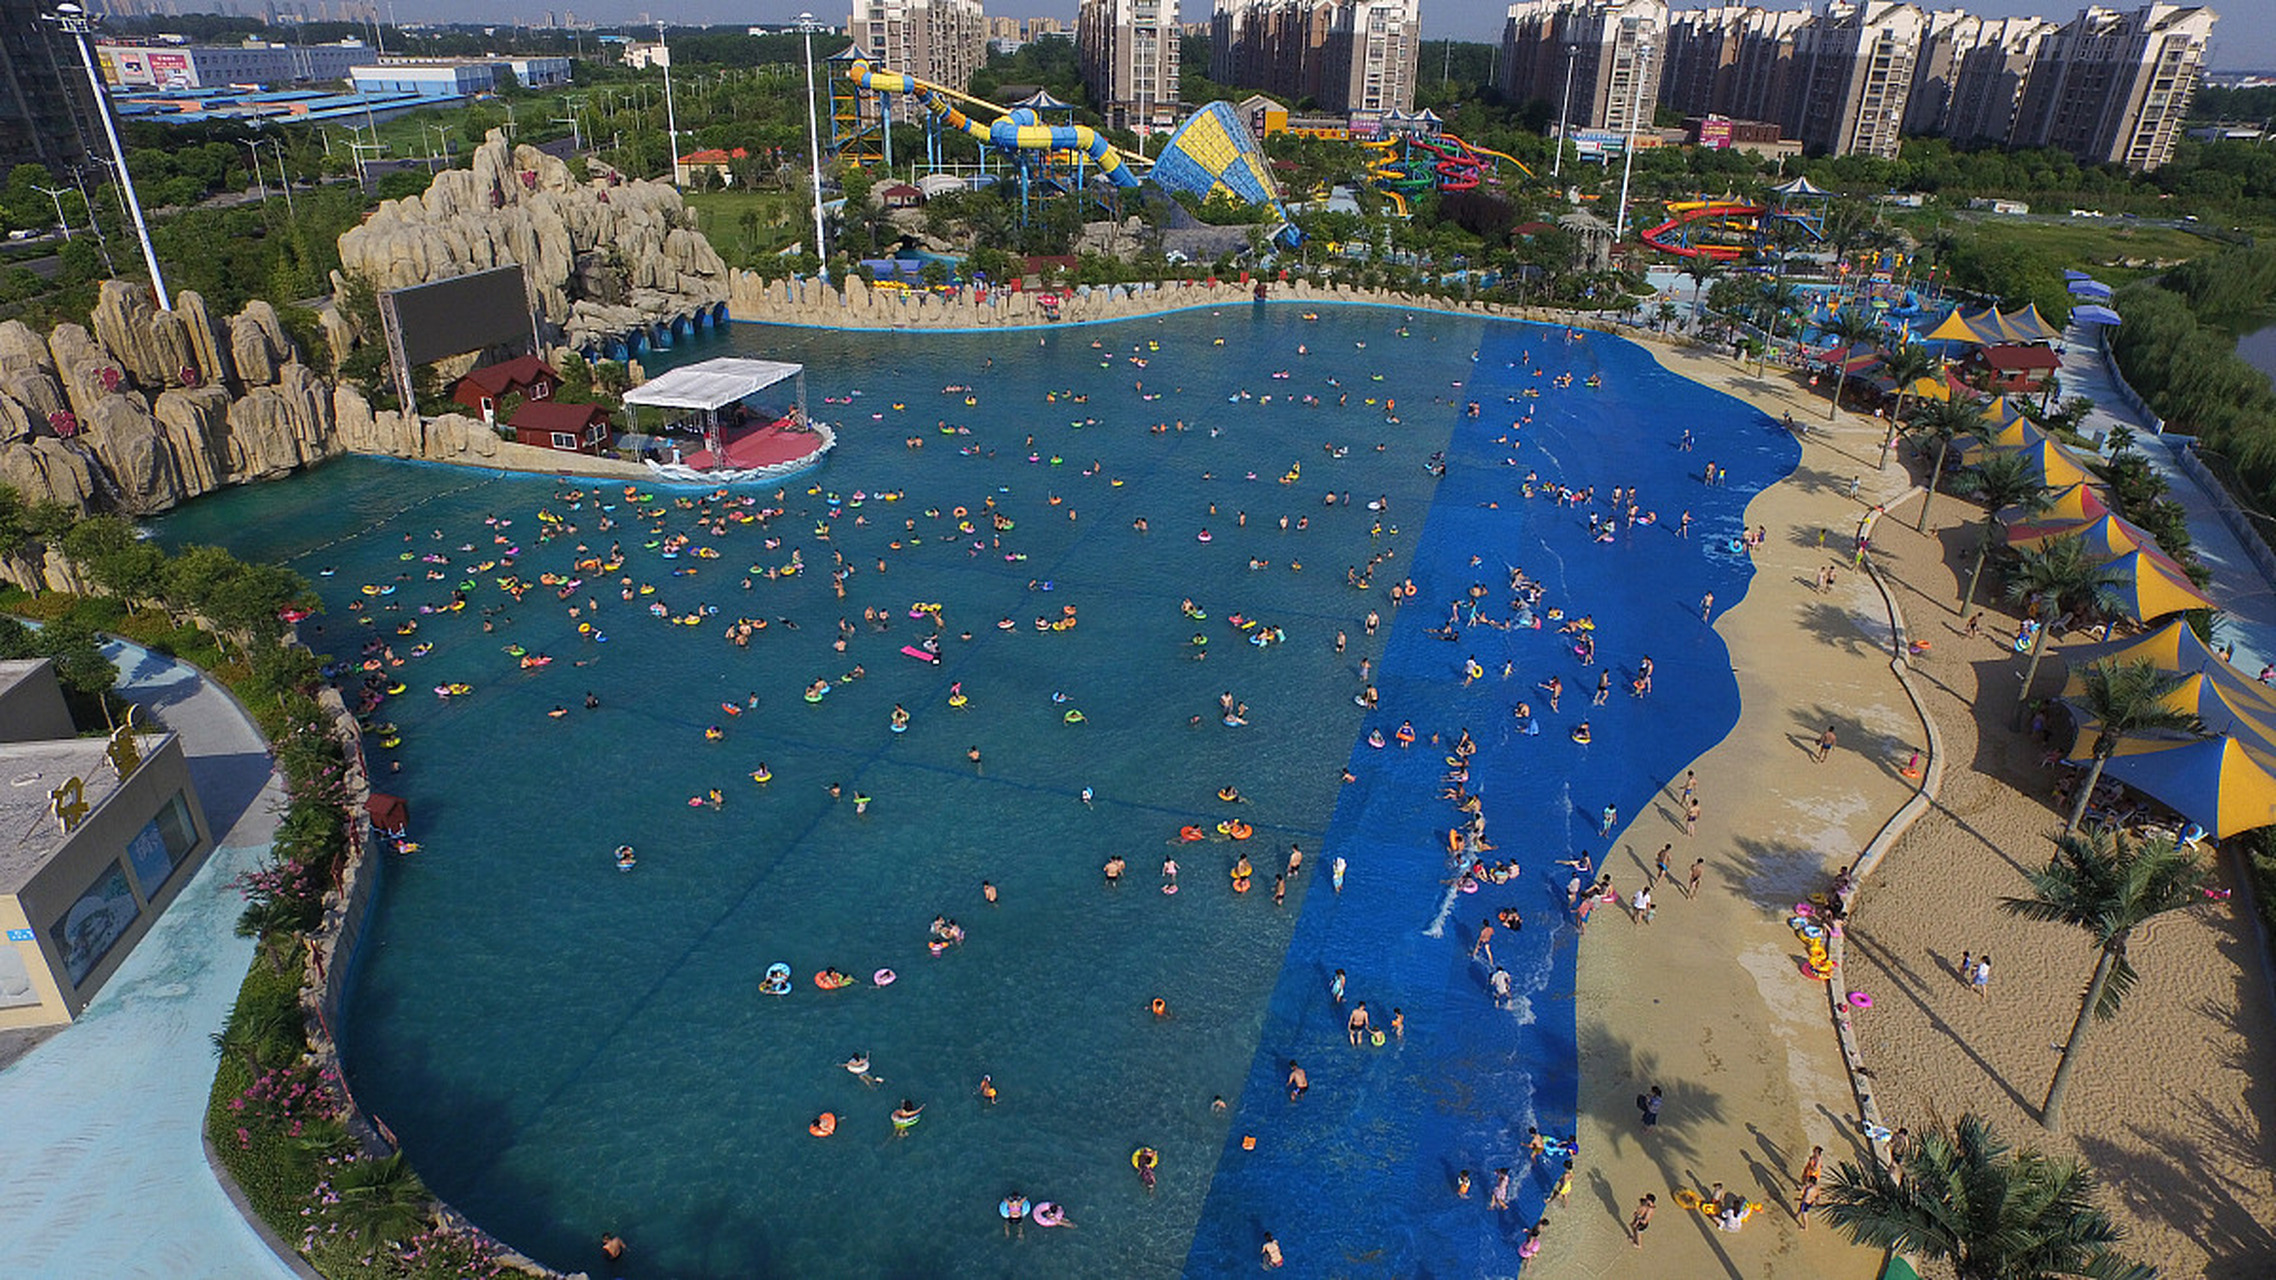 山西千朝浪屿水世界,是华北地区最大的室内水上乐园,占地38万平方米